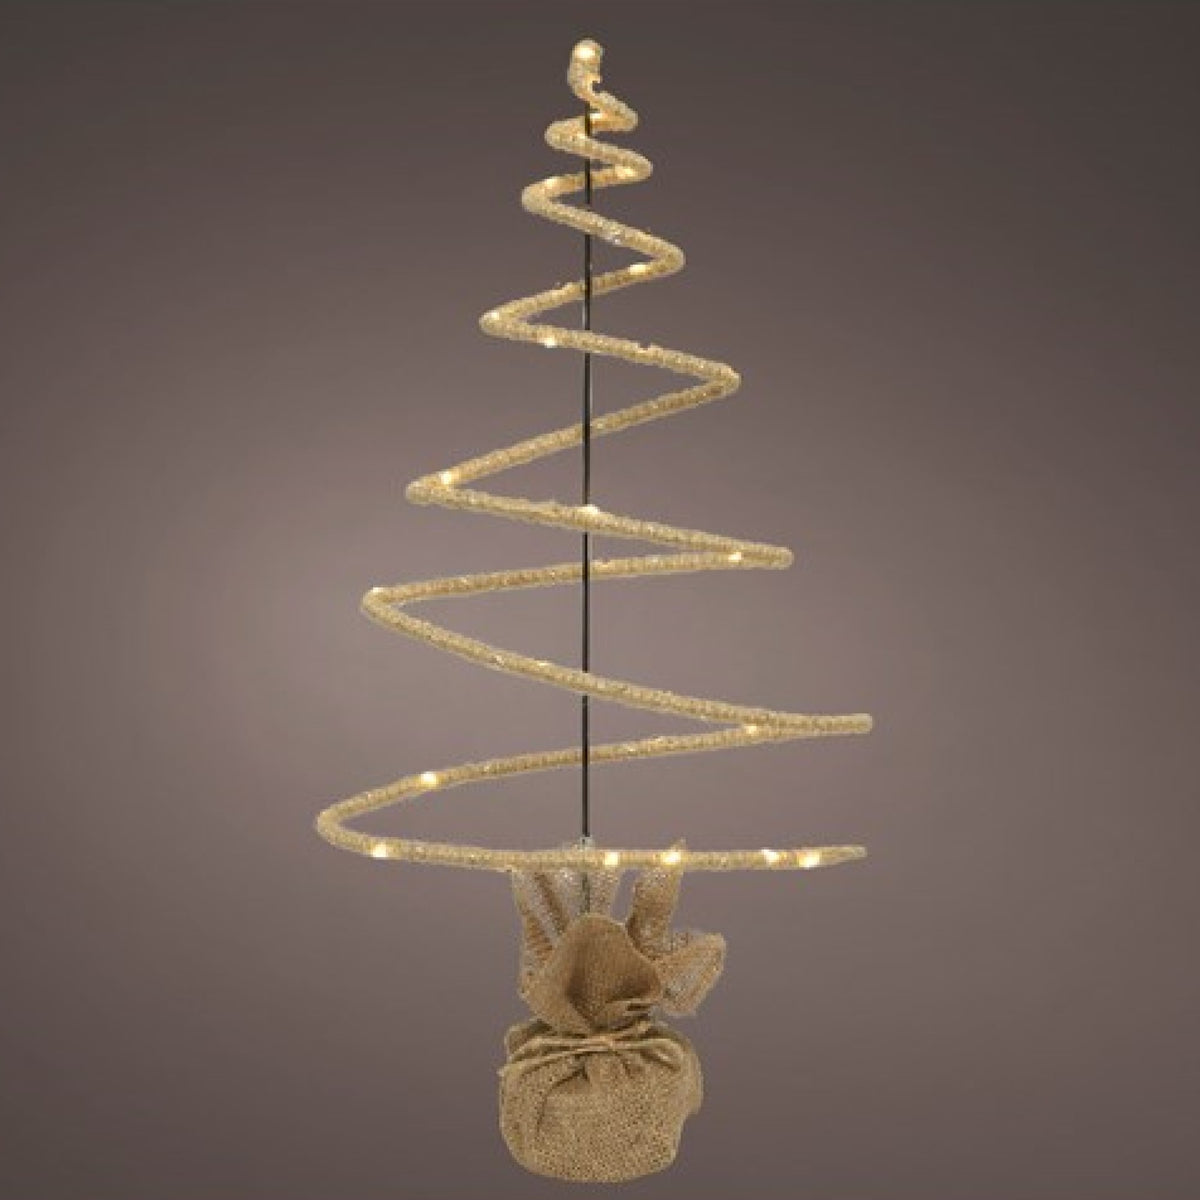 LED Lit Christmas Tree with Burlap Base